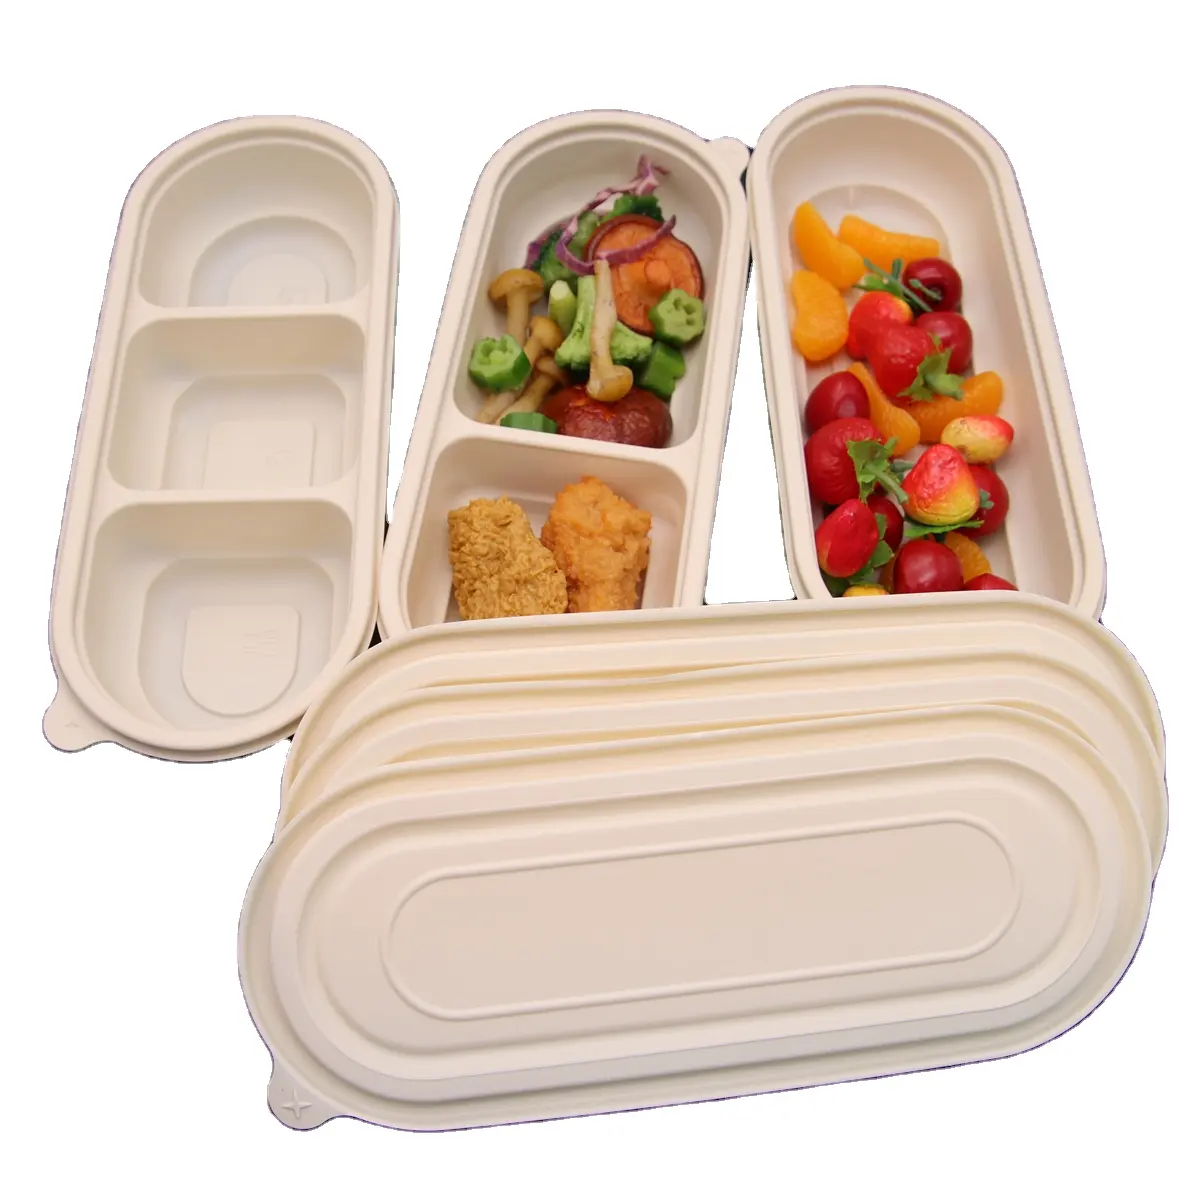 Биоразлагаемый одноразовый контейнер для еды, упаковка для фаст-фуда на вынос, биоразлагаемые контейнеры для еды, коробка для еды на вынос для обеда